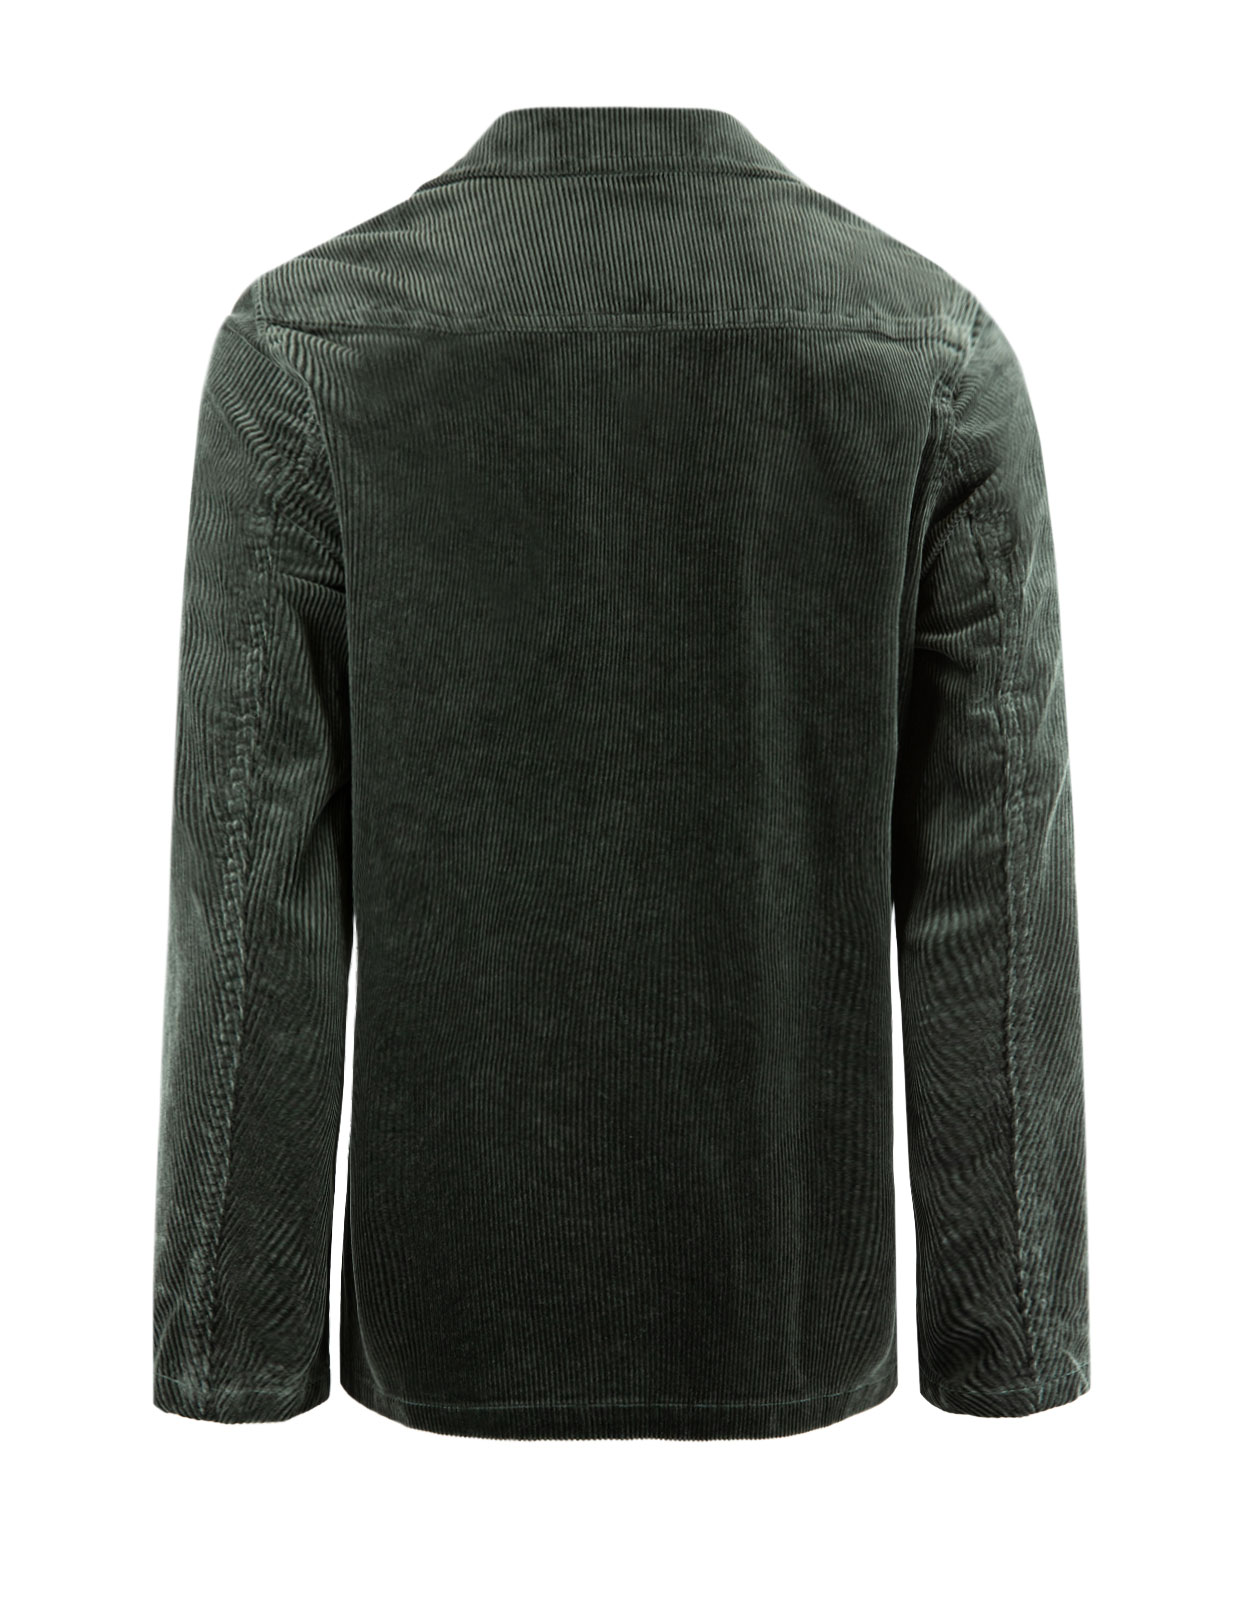 Hampus Shirt Jacket Cord Green